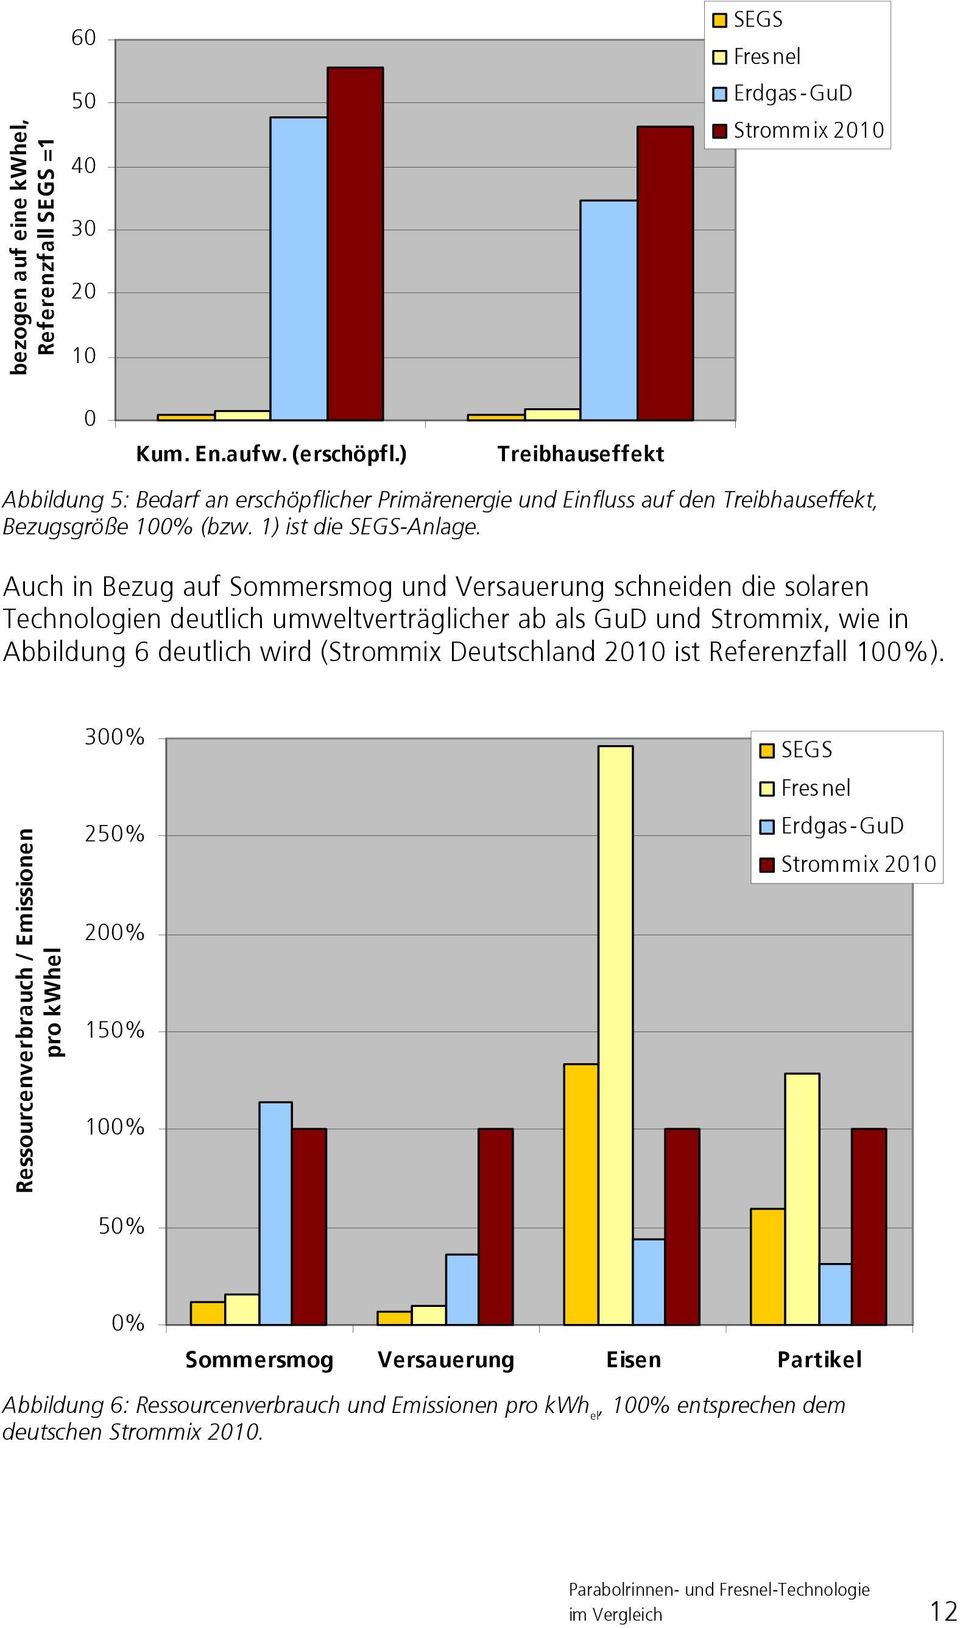 Auch in Bezug auf Sommersmog und Versauerung schneiden die solaren Technologien deutlich umweltverträglicher ab als GuD und Strommix, wie in Abbildung 6 deutlich wird (Strommix Deutschland 2010